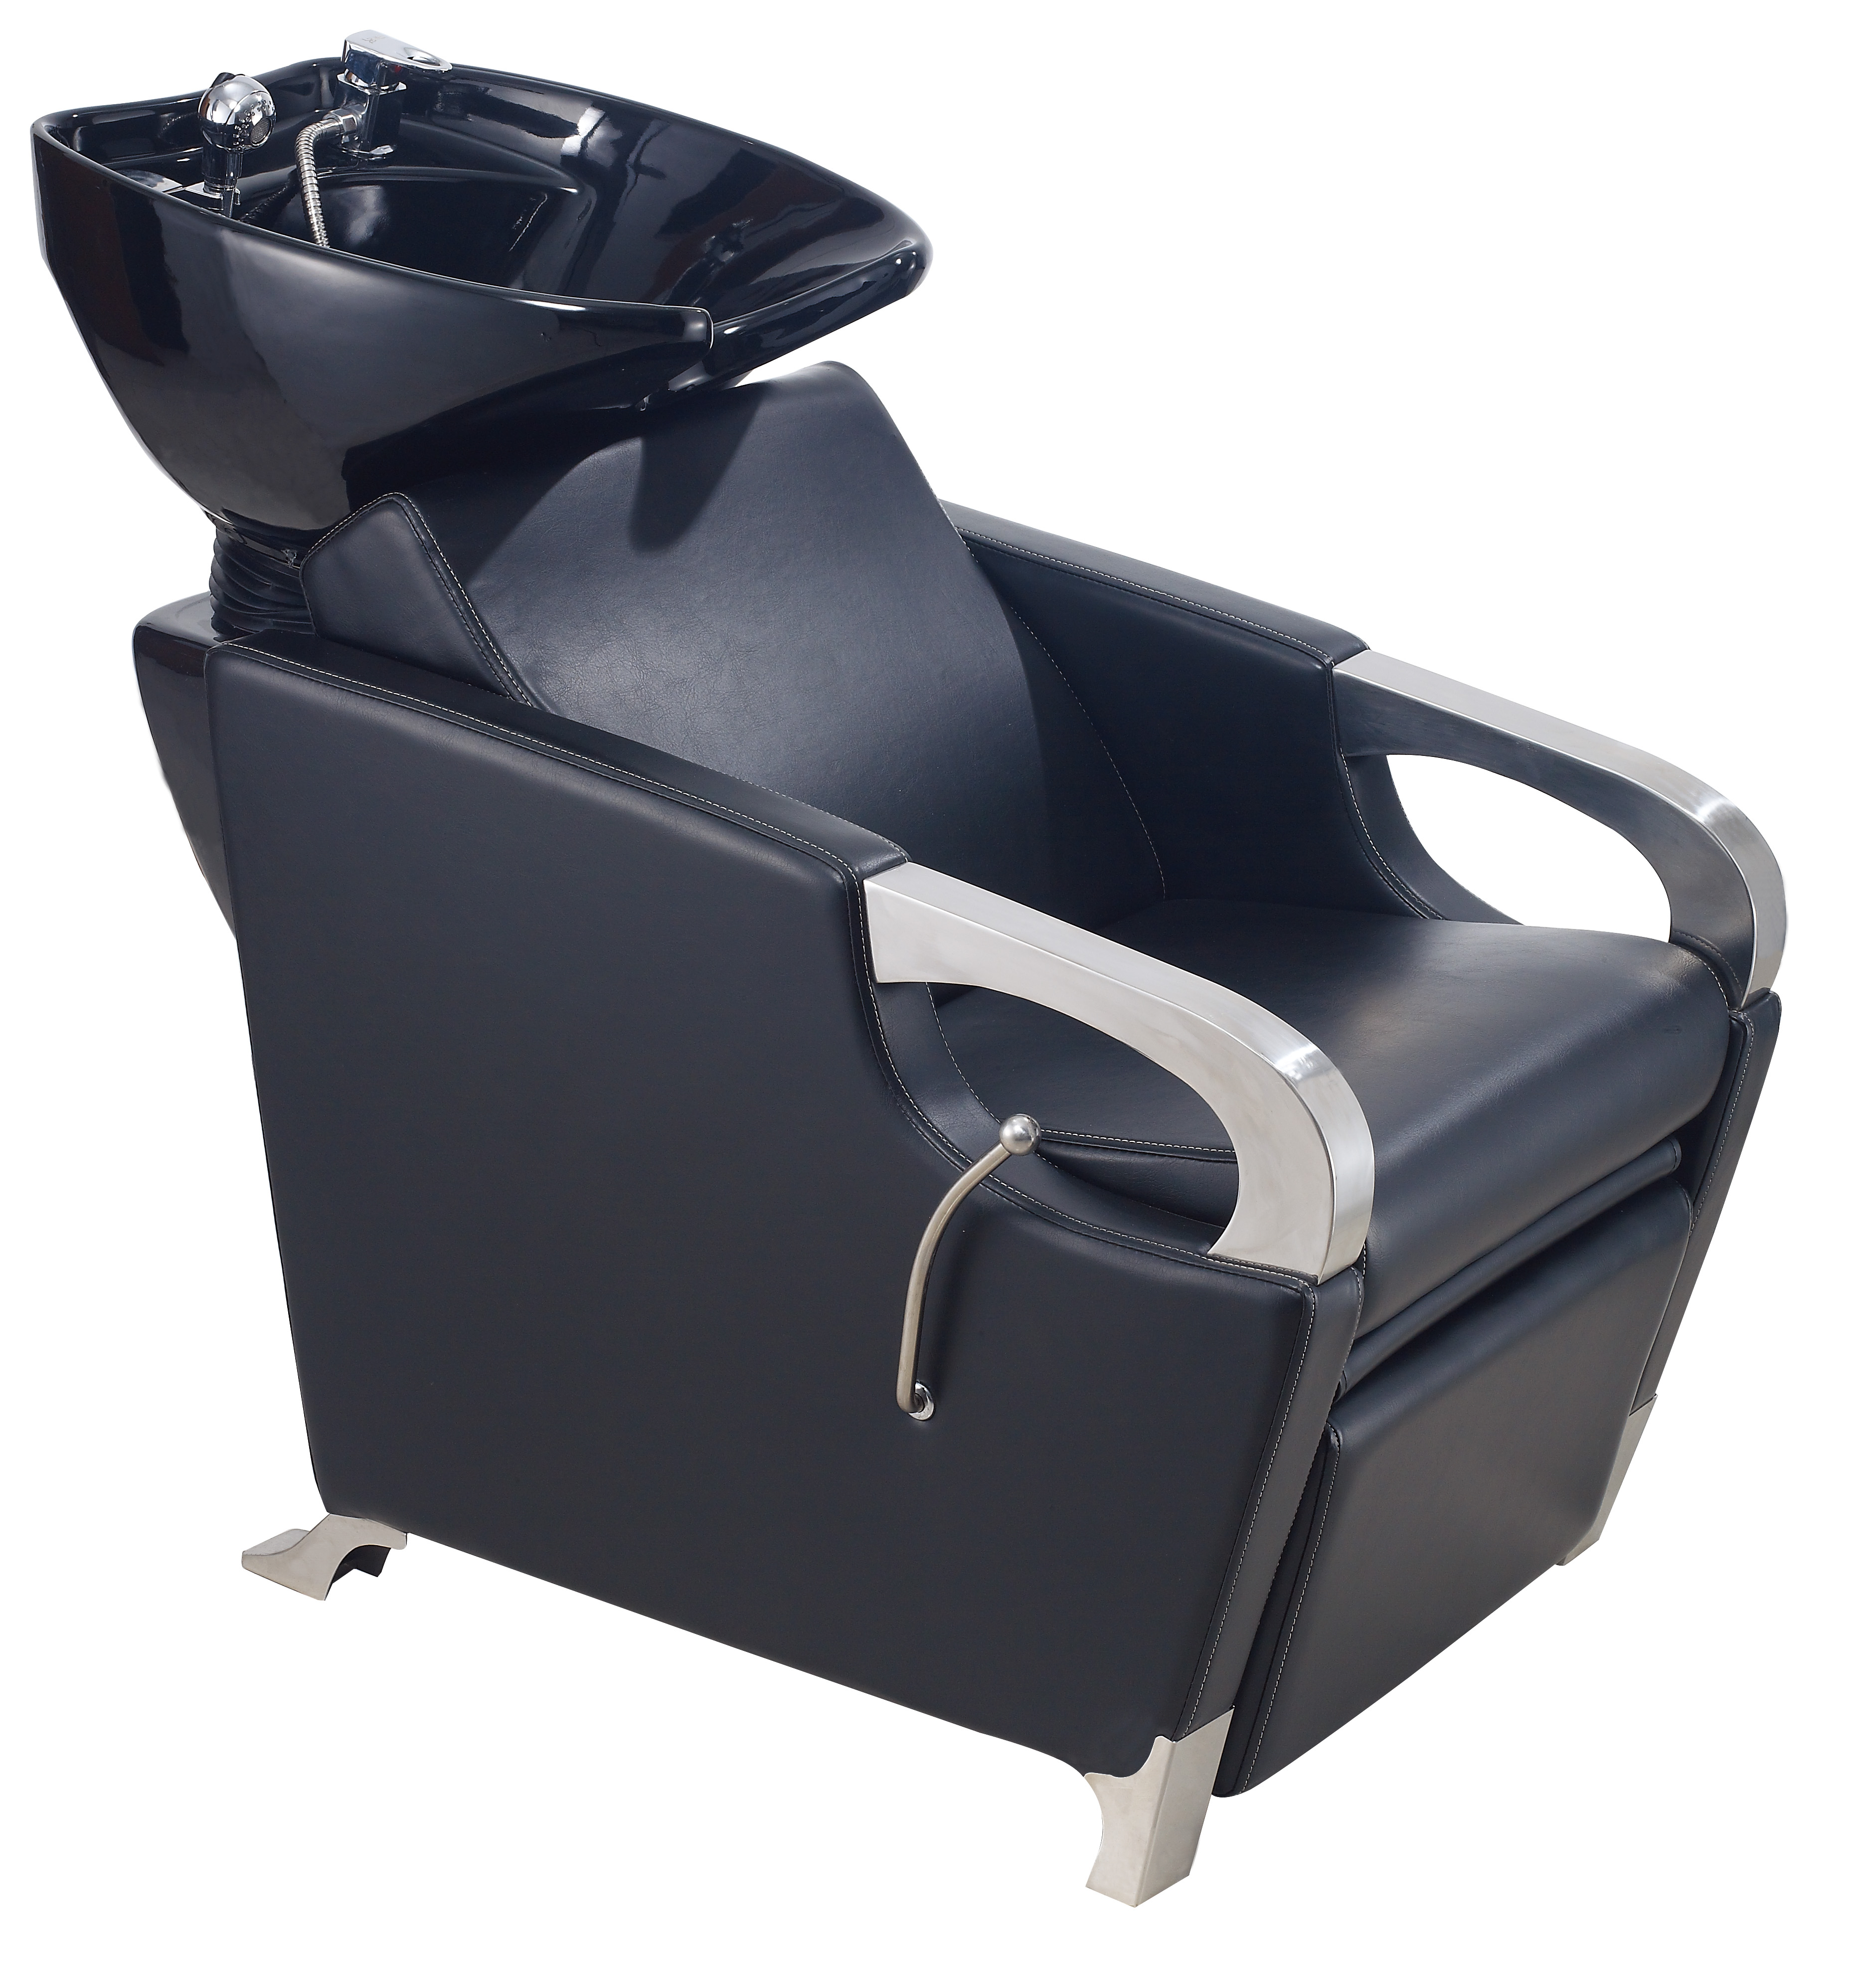 Portable Salon Hair Washing Units Shampoo Chairs with Basin - Salon ...